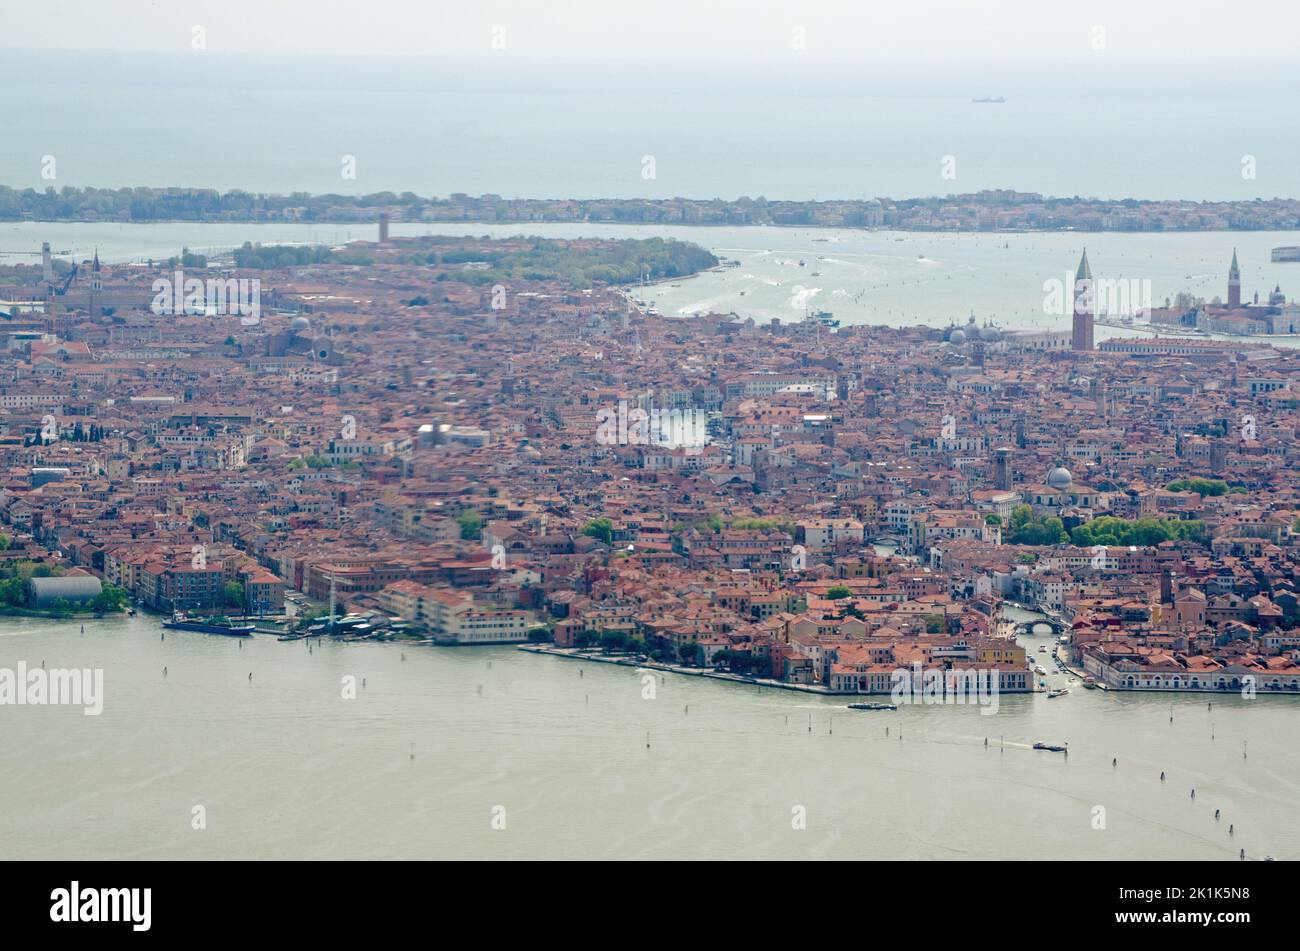 Vista desde un avión con vistas al centro histórico de Venecia con la entrada al Canal Cannaregio en la parte inferior derecha de la imagen. Foto de stock